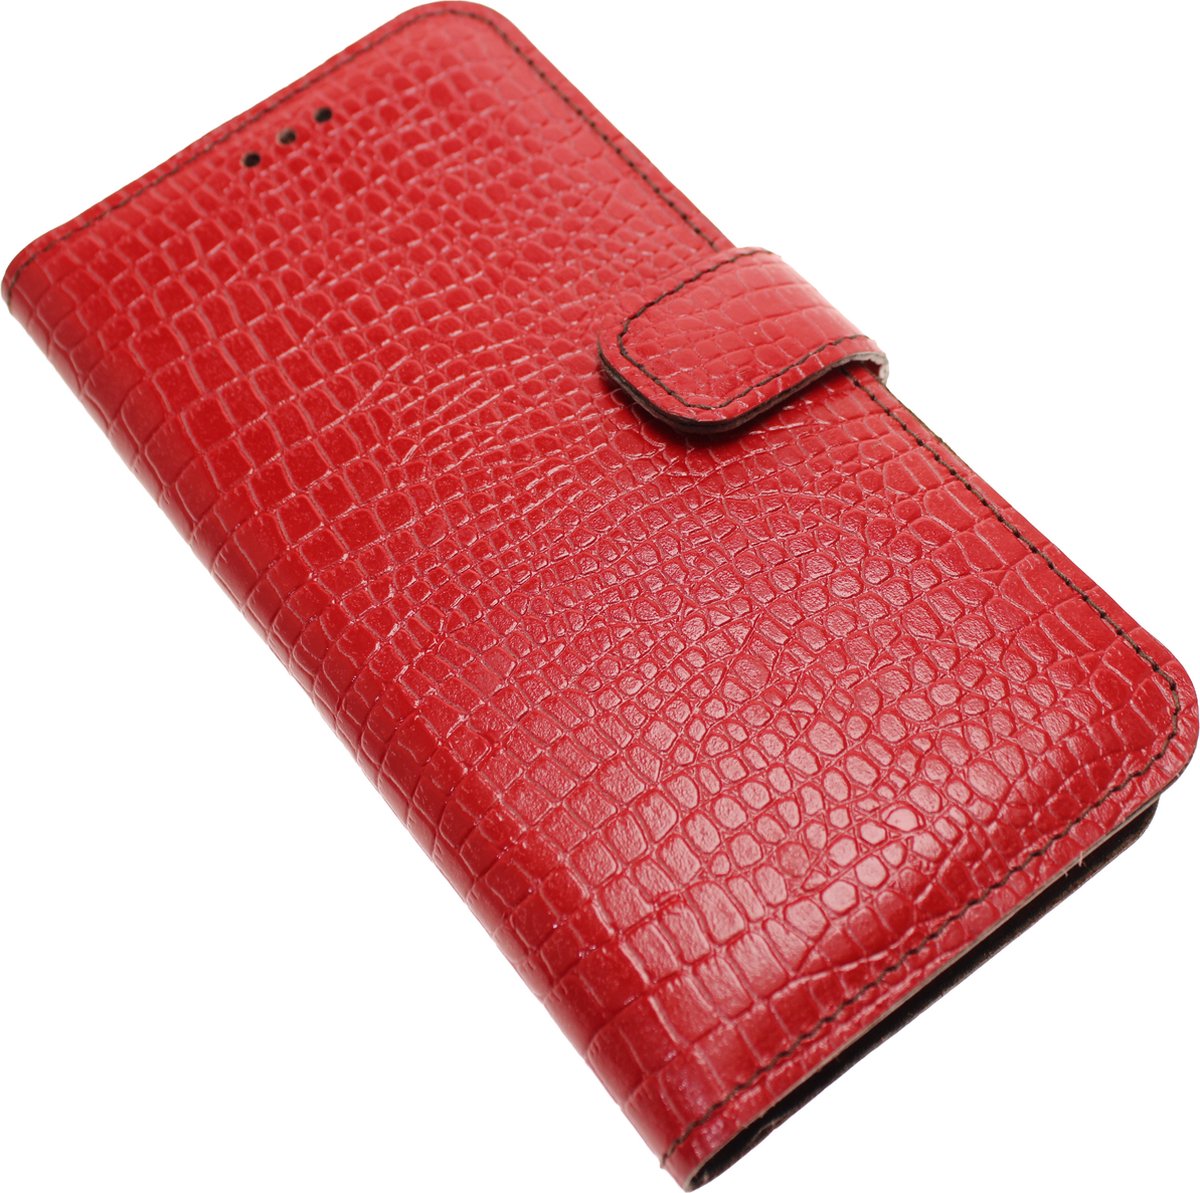 Made-NL Handgemaakte ( Apple iPhone 13 ) book case Rood krokoillenprint reliëf kalfsleer robuuste hoesje